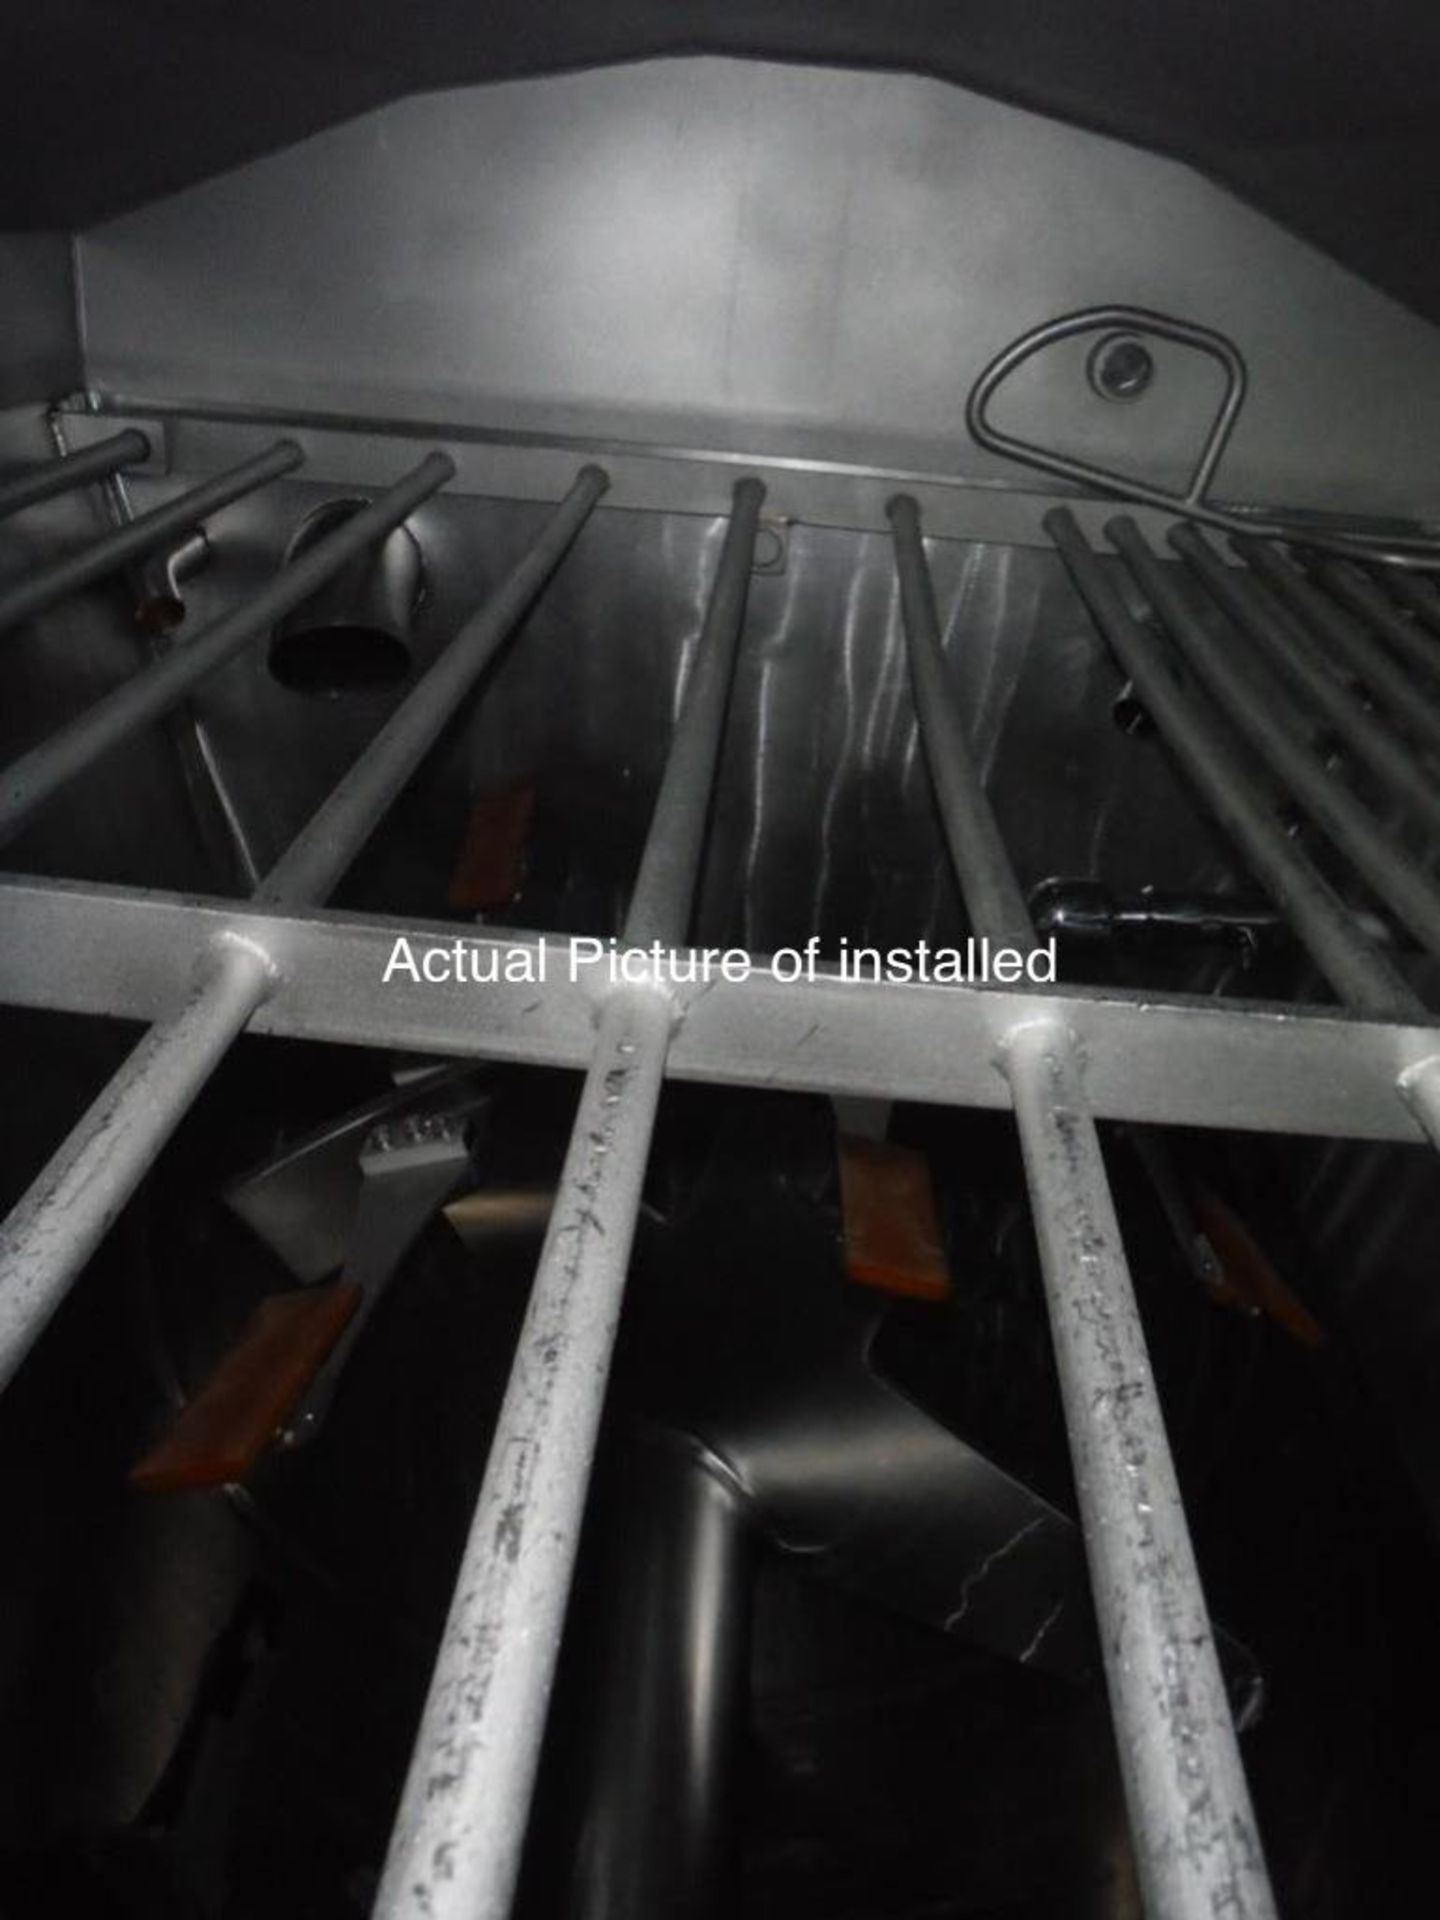 2011 Blentech system cooker - Image 14 of 17